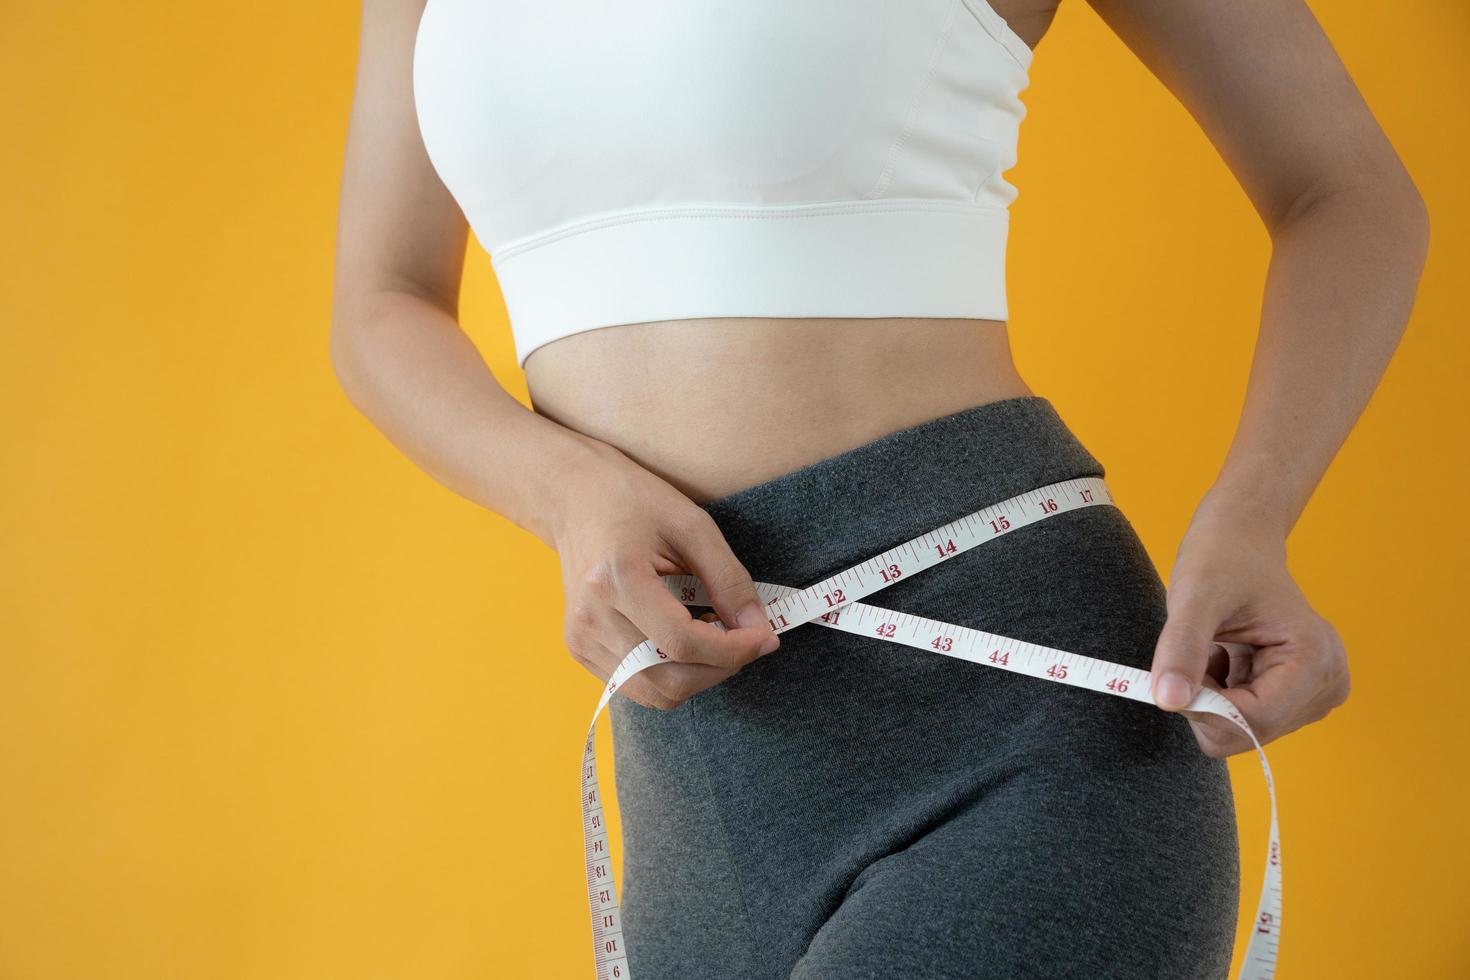 Ernährung und Diät. Schönheit schlanker weiblicher Körper mit Maßband. frau in trainingskleidung erreicht gewichtsverlustziel für ein gesundes leben, verrückt nach dünnheit, dünner taille, ernährungsberaterin. foto